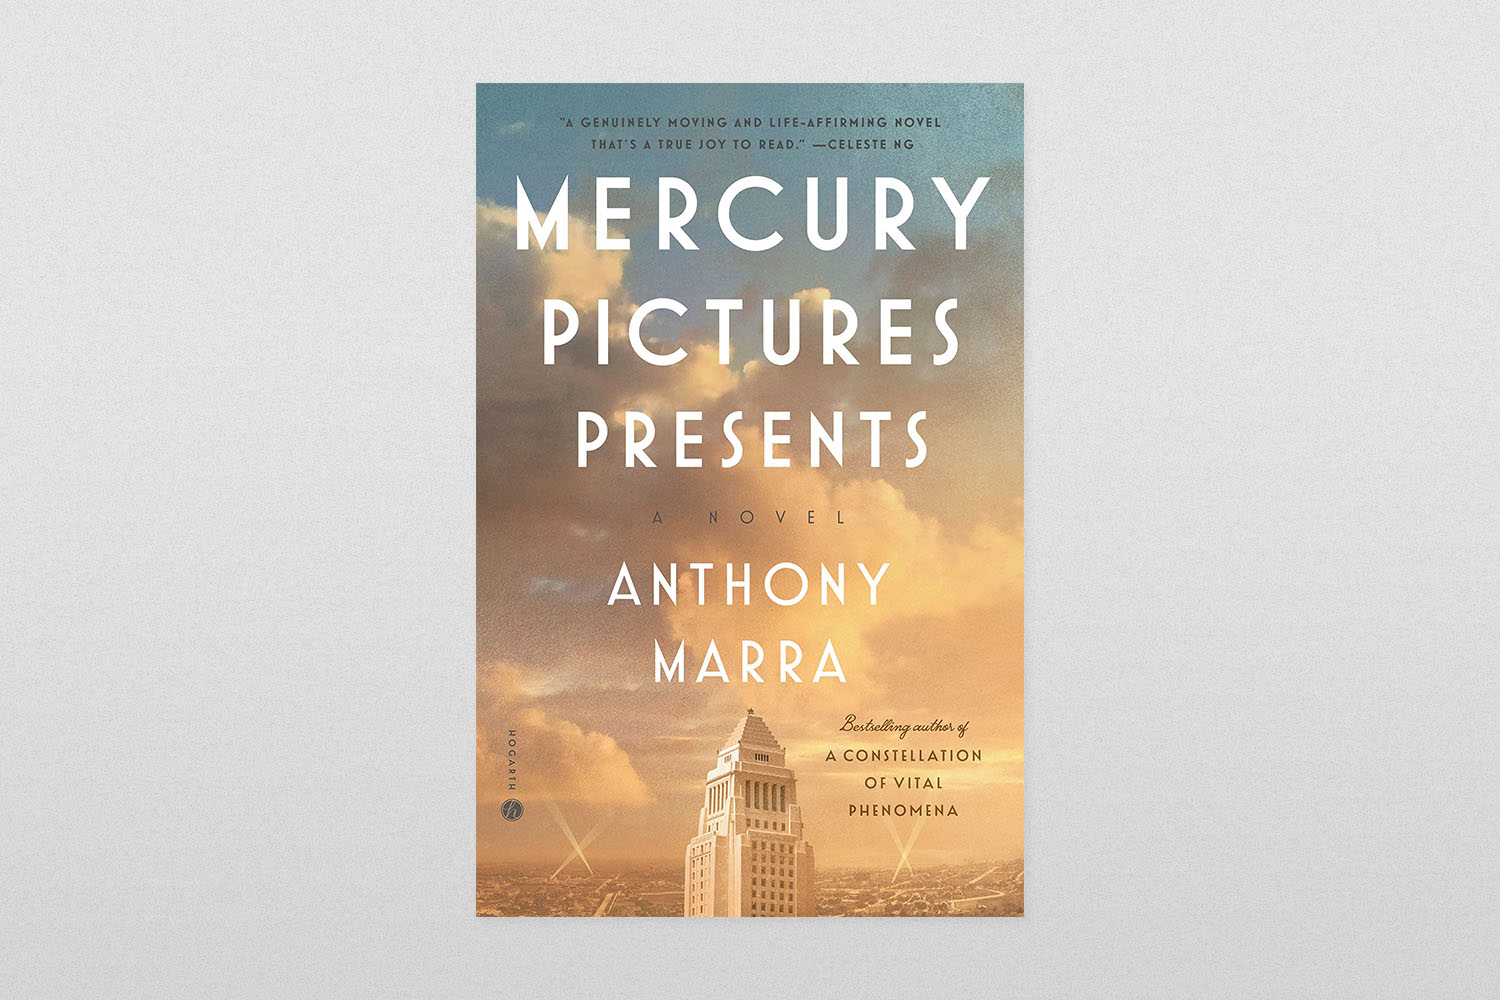 "Mercury Pictures Presents"